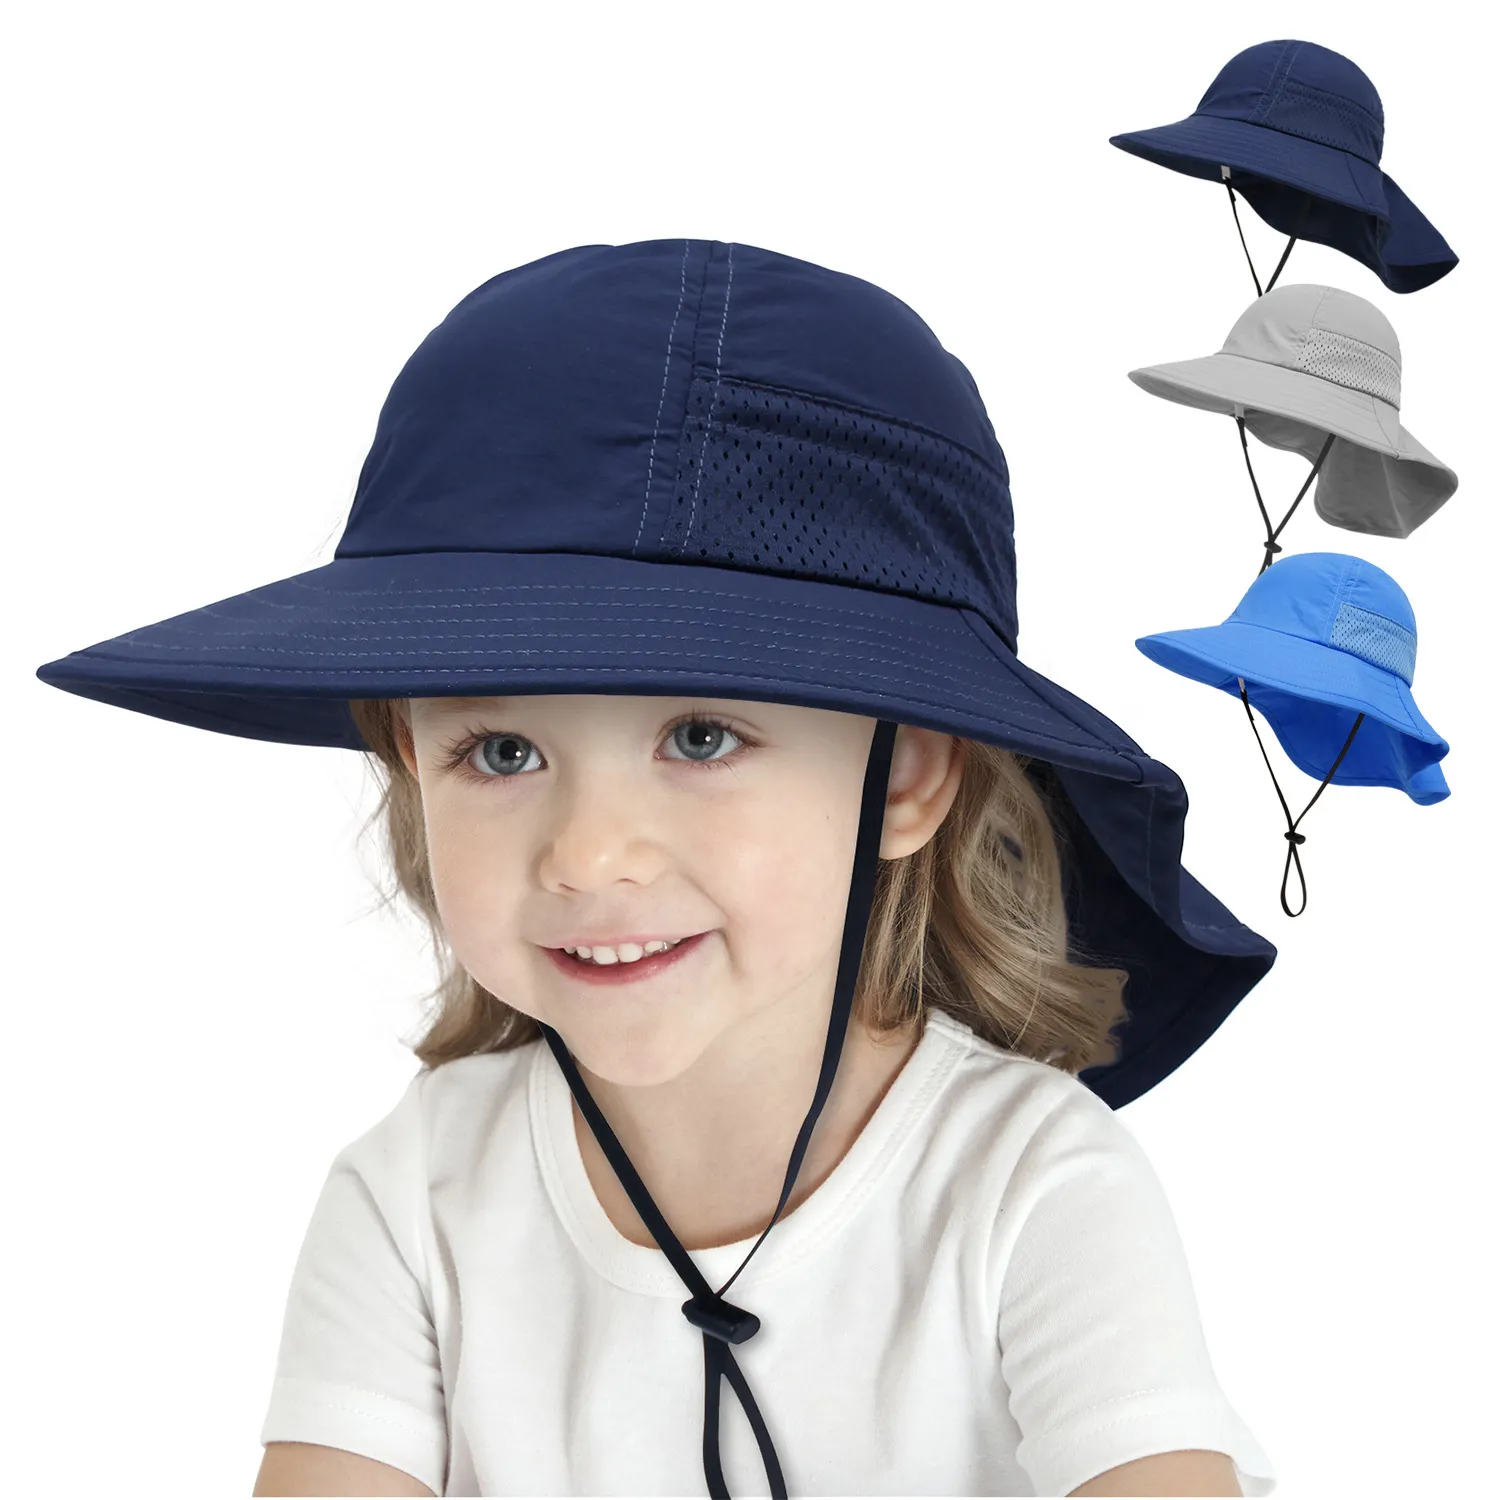 Baby emmer hoed buiten strand kinderen zon beschermen caps puur kleur licht gewicht ademend gaas kinderhoeden met cape